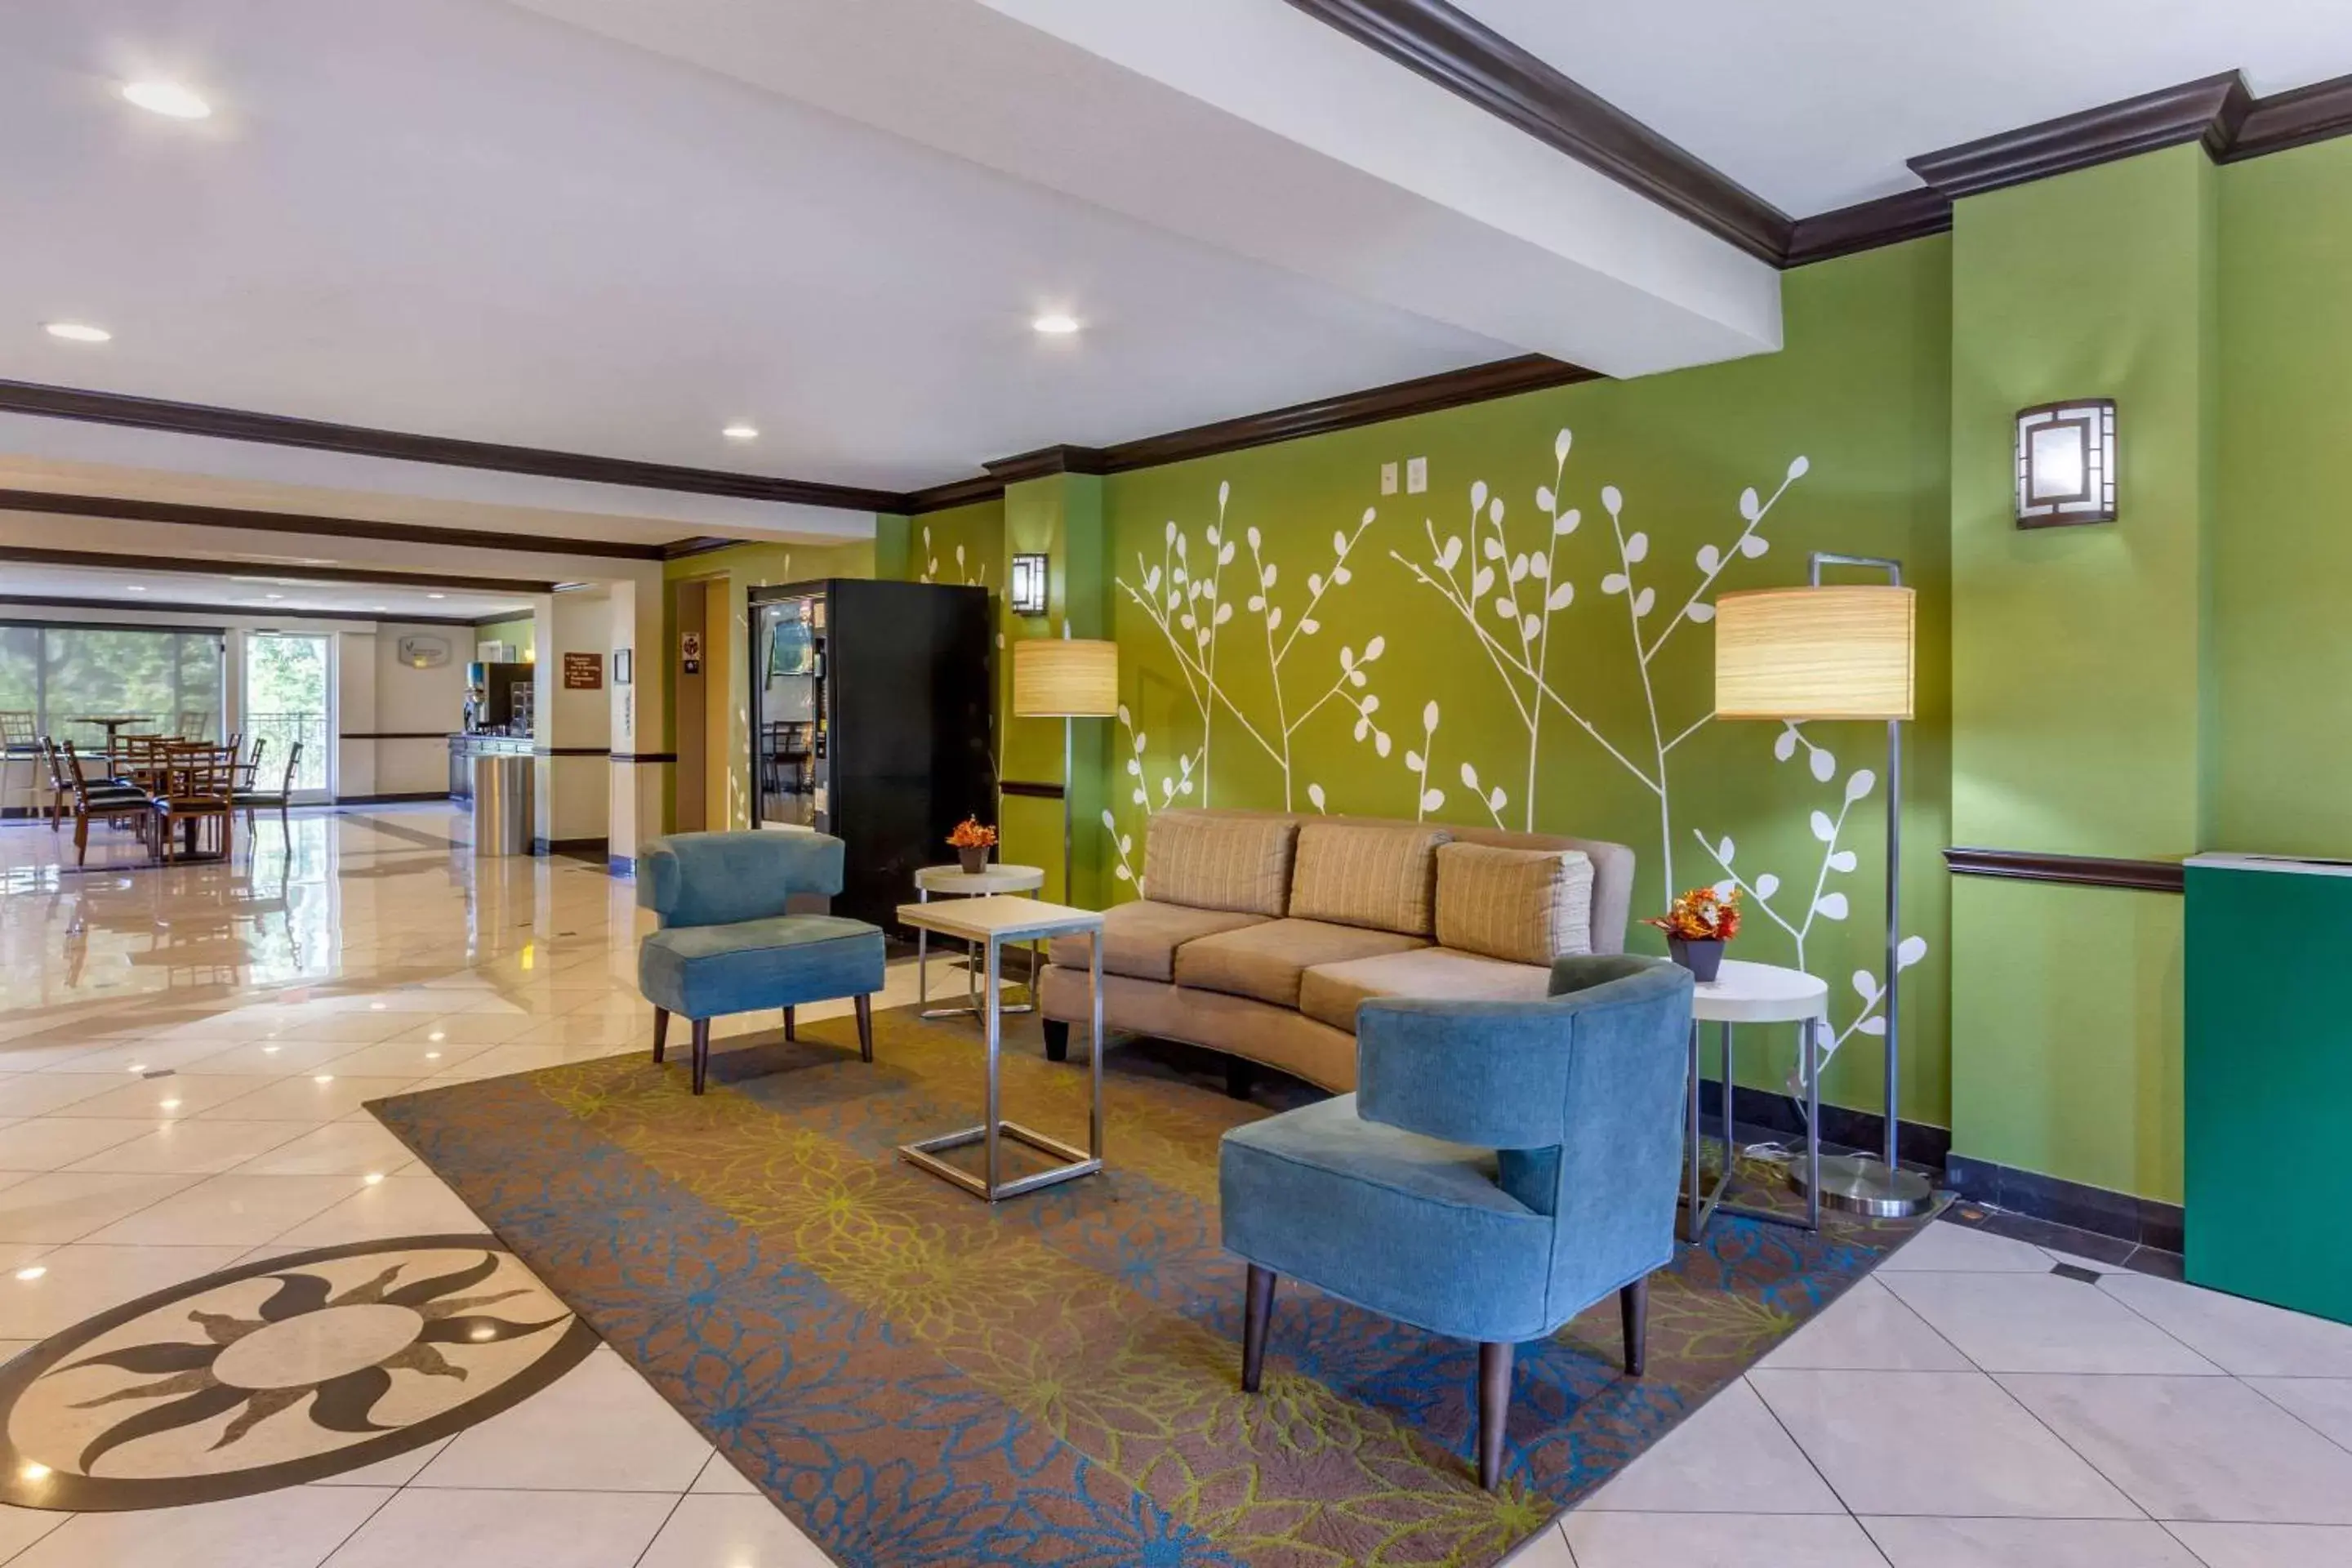 Lobby or reception, Lobby/Reception in Sleep Inn & Suites - Jacksonville